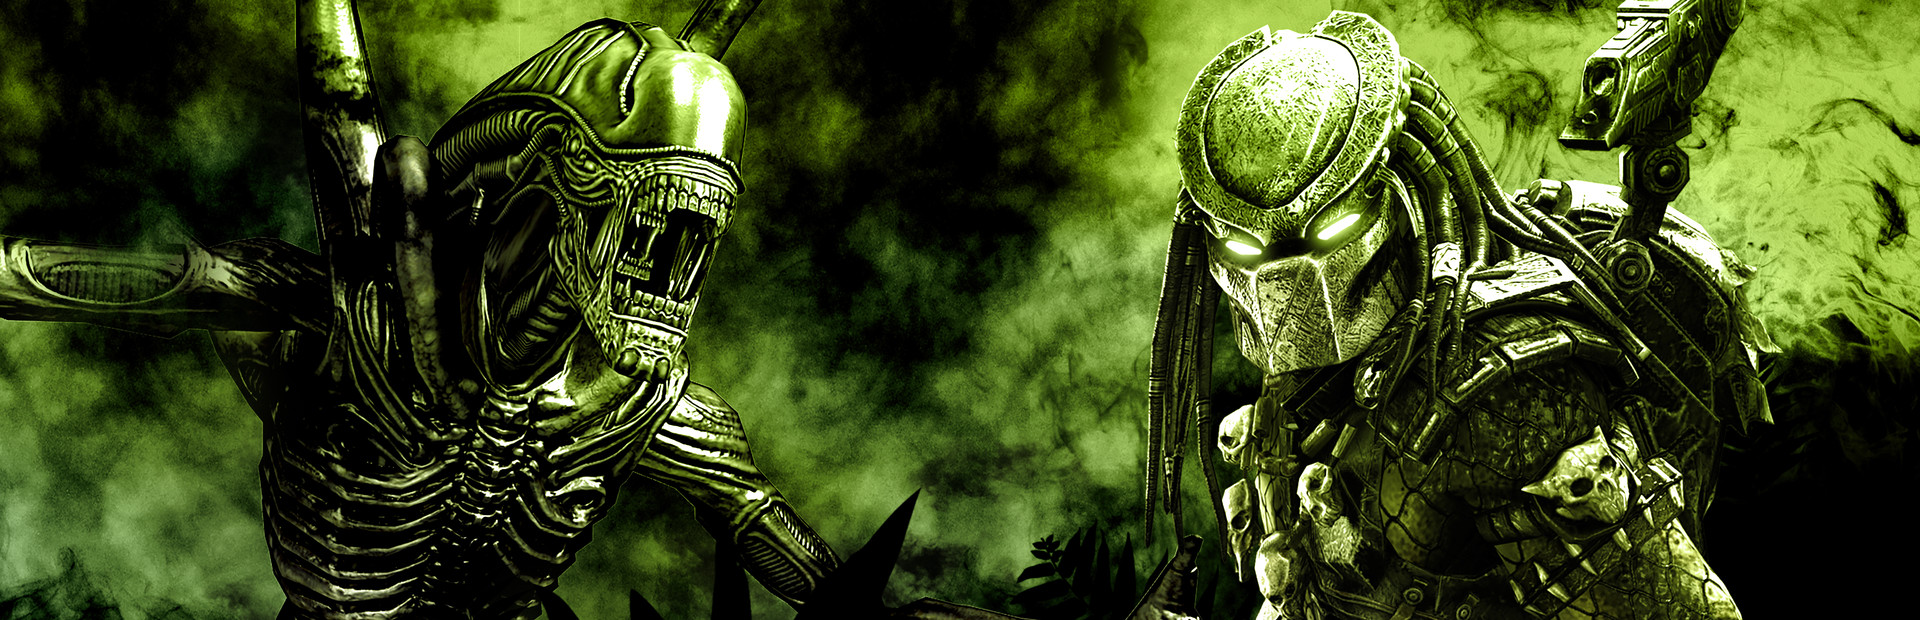 Aliens vs. Predator™ cover image